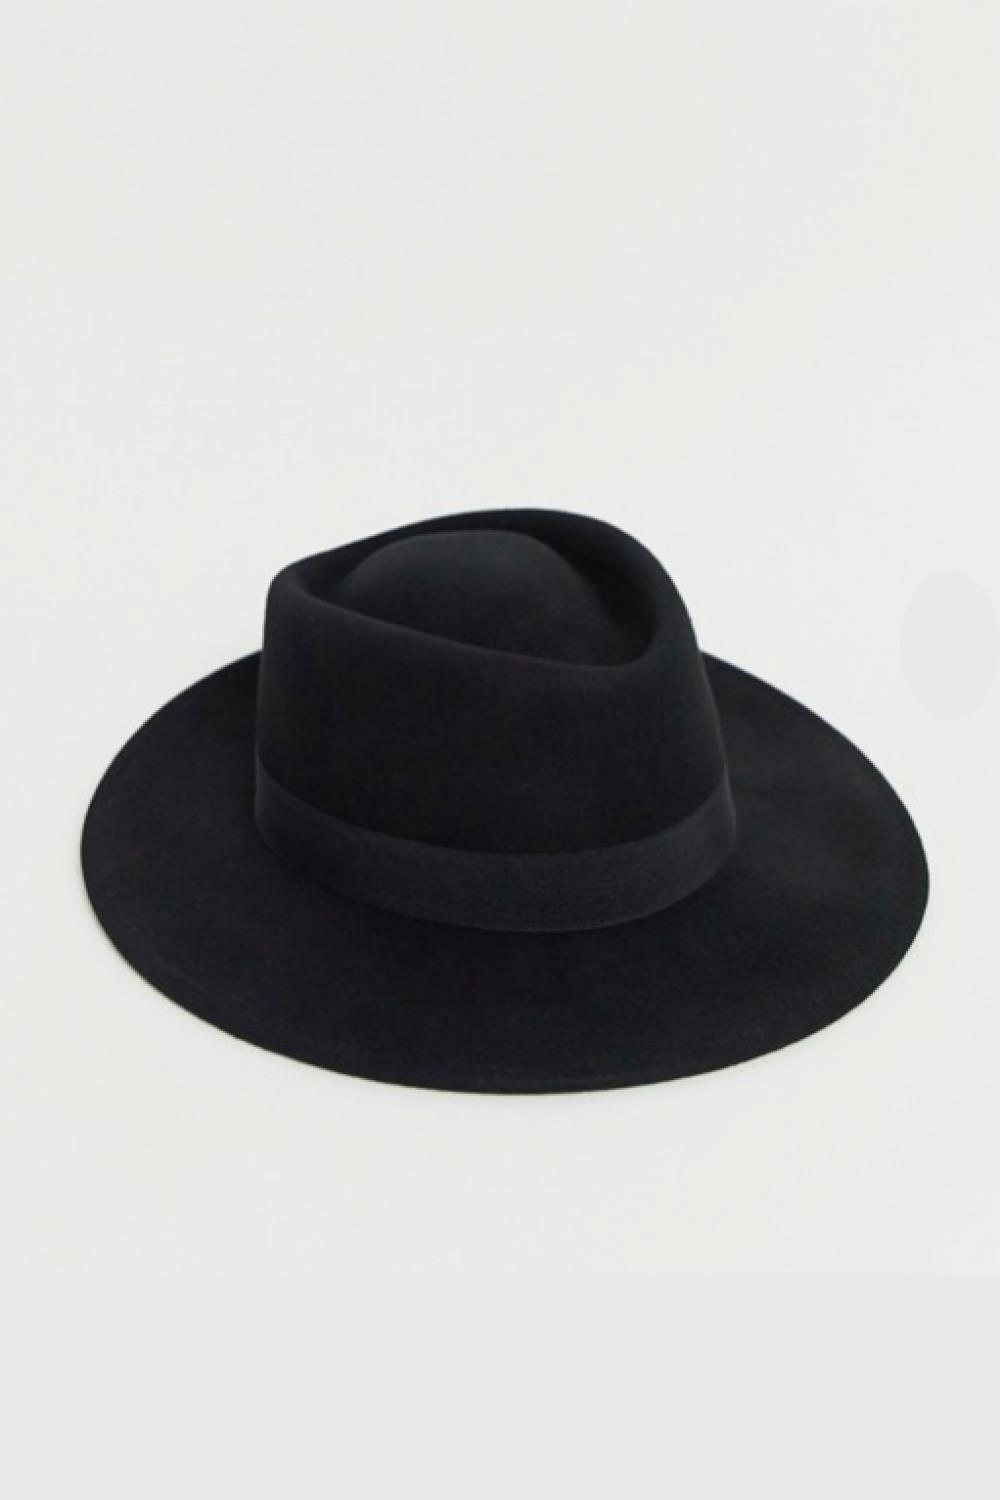 rocio camacho look entretiempo sombrero asos 25,99€